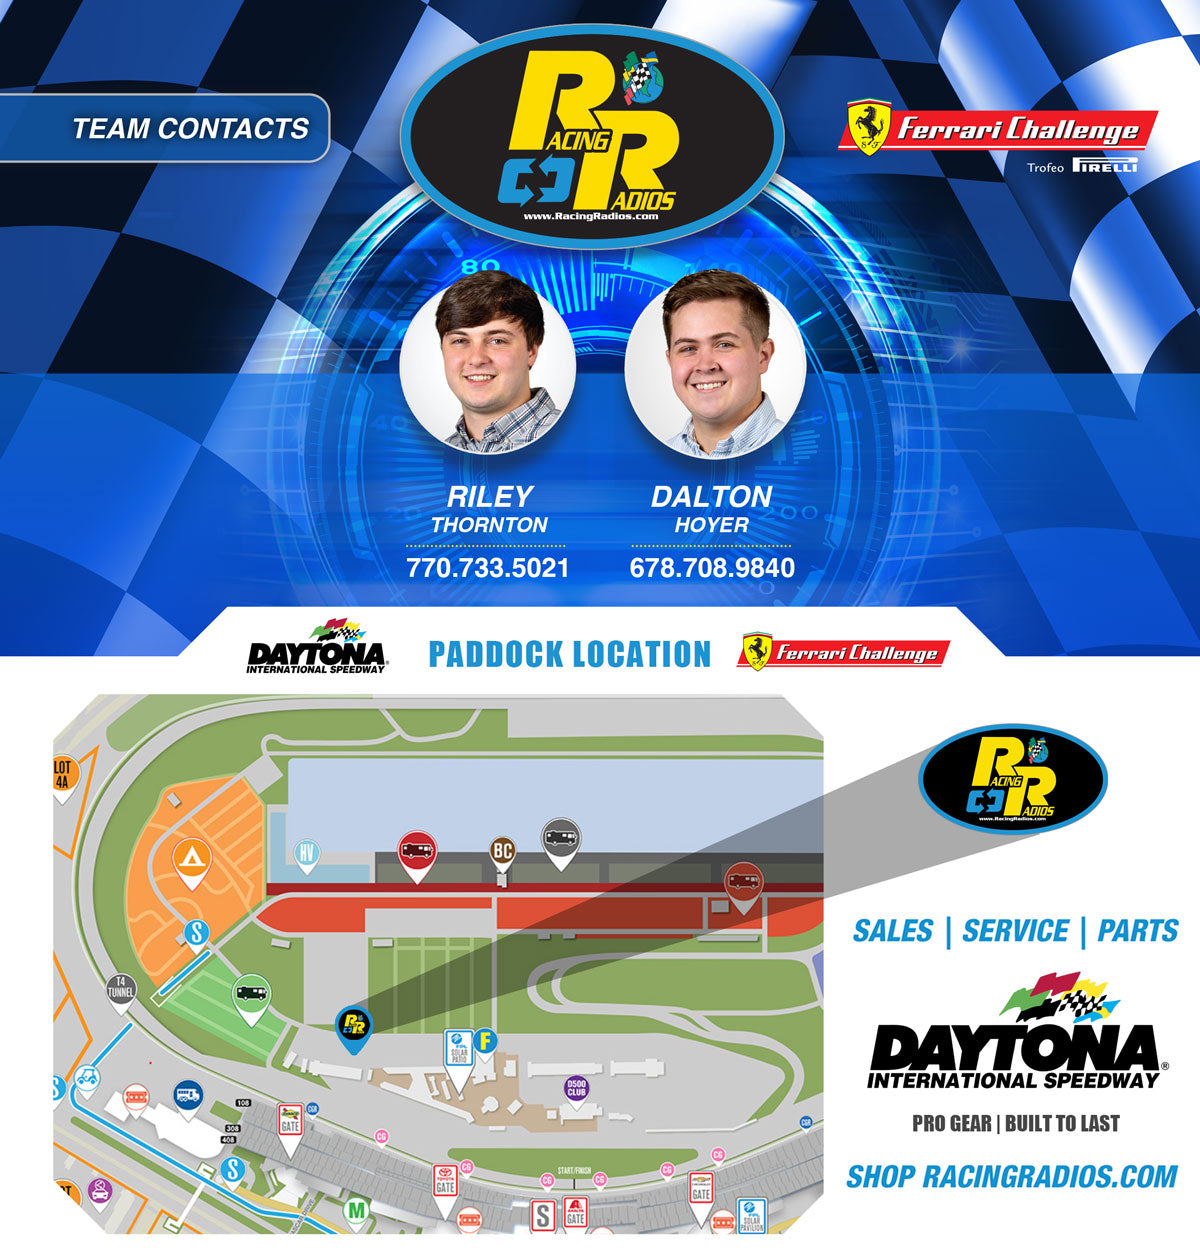 Ferrari Challenge | Racing Radios Paddock Location | Daytona